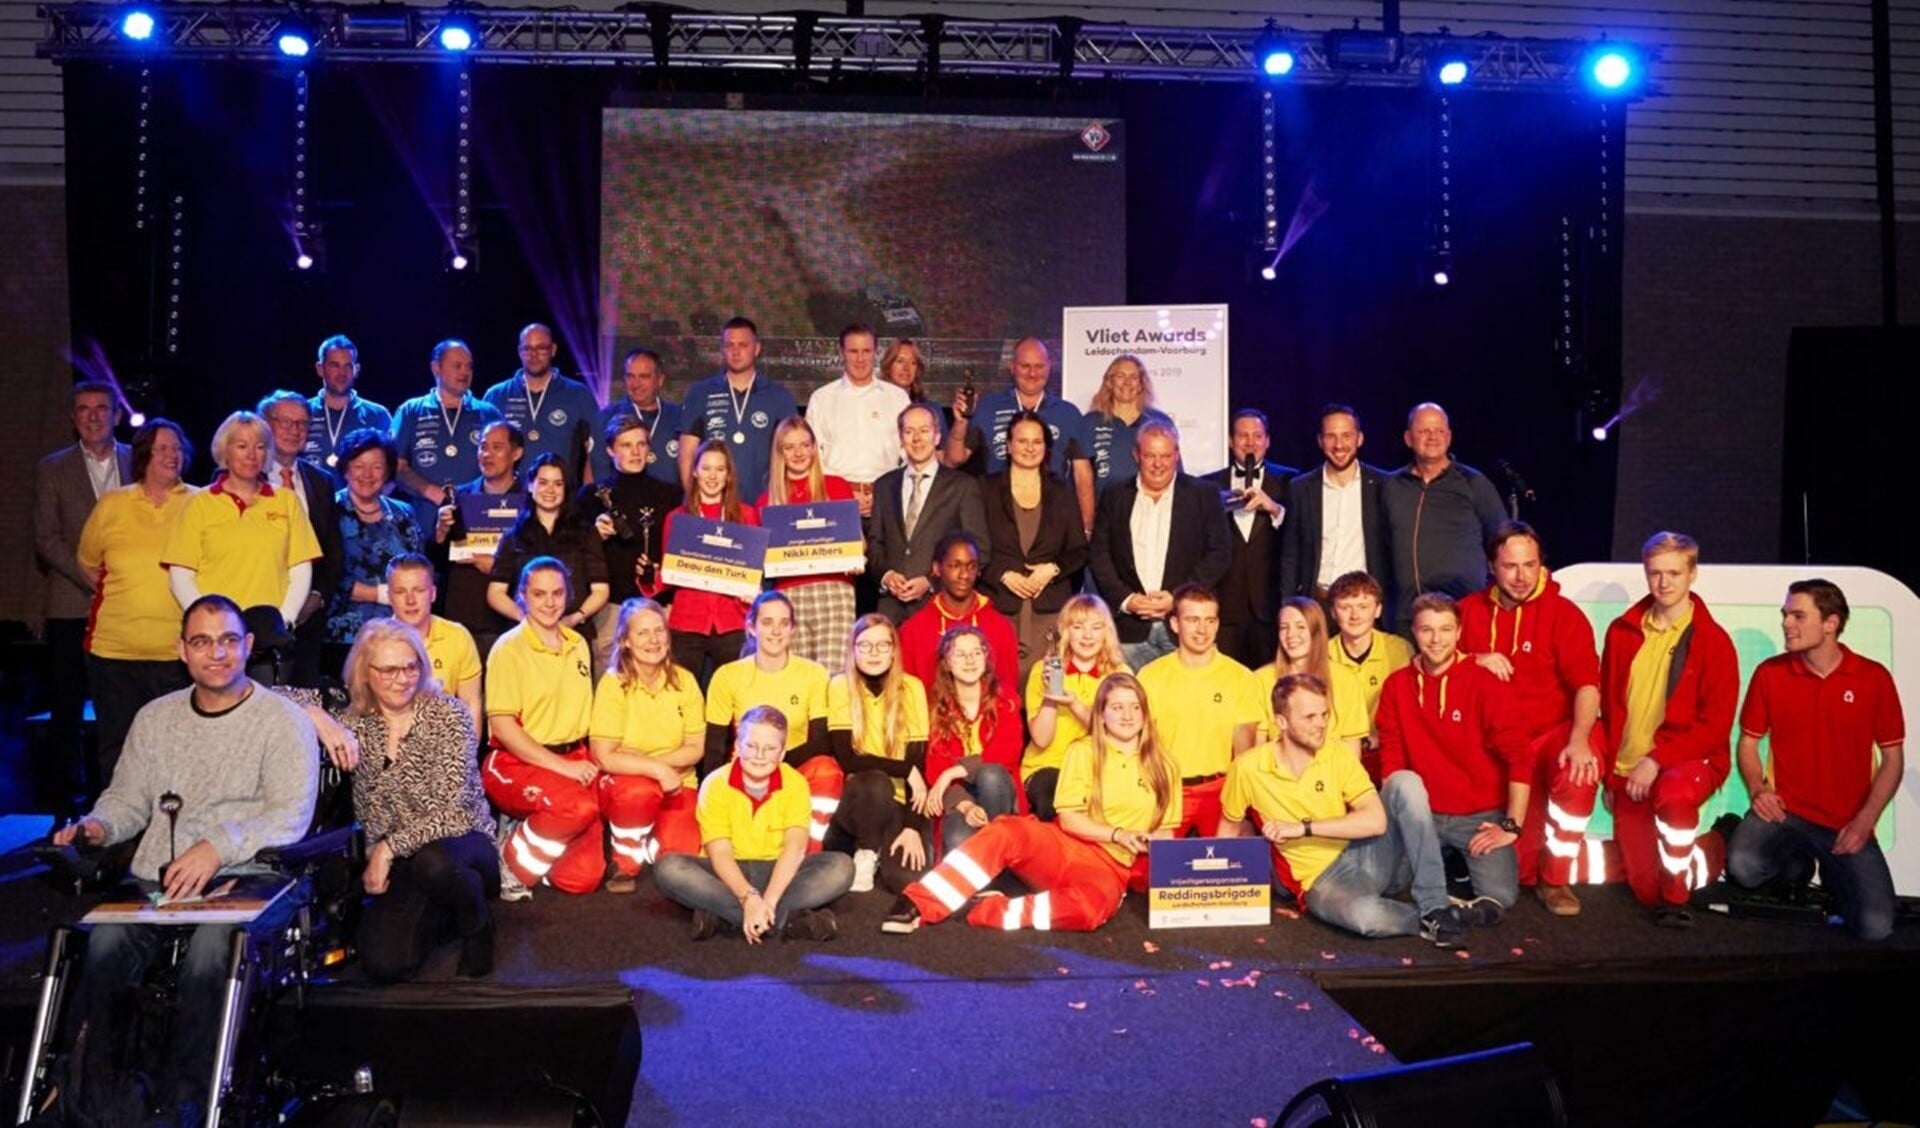 De winnaars van de Vlietawards 2019 (foto: vlietawards.nl/ Dennis Morsch).